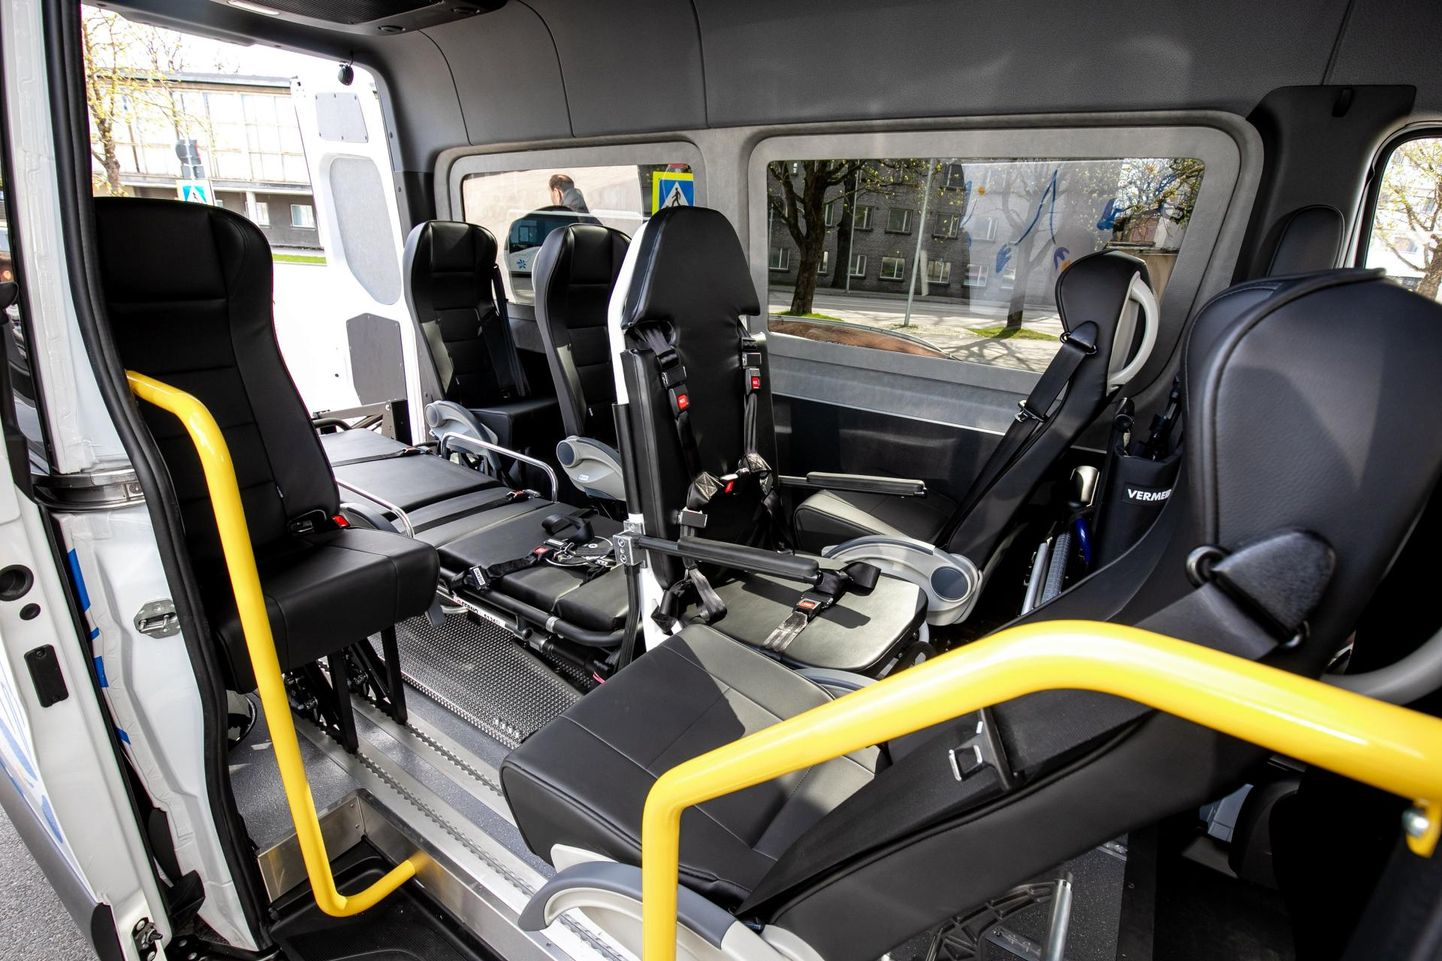 Seni on nõudepõhine ühistransport kasutusel olnud sotsiaalvaldkonnas. Invasõidukiks ümber ehitatud bussis saab sõita ka ratastoolis inimene.